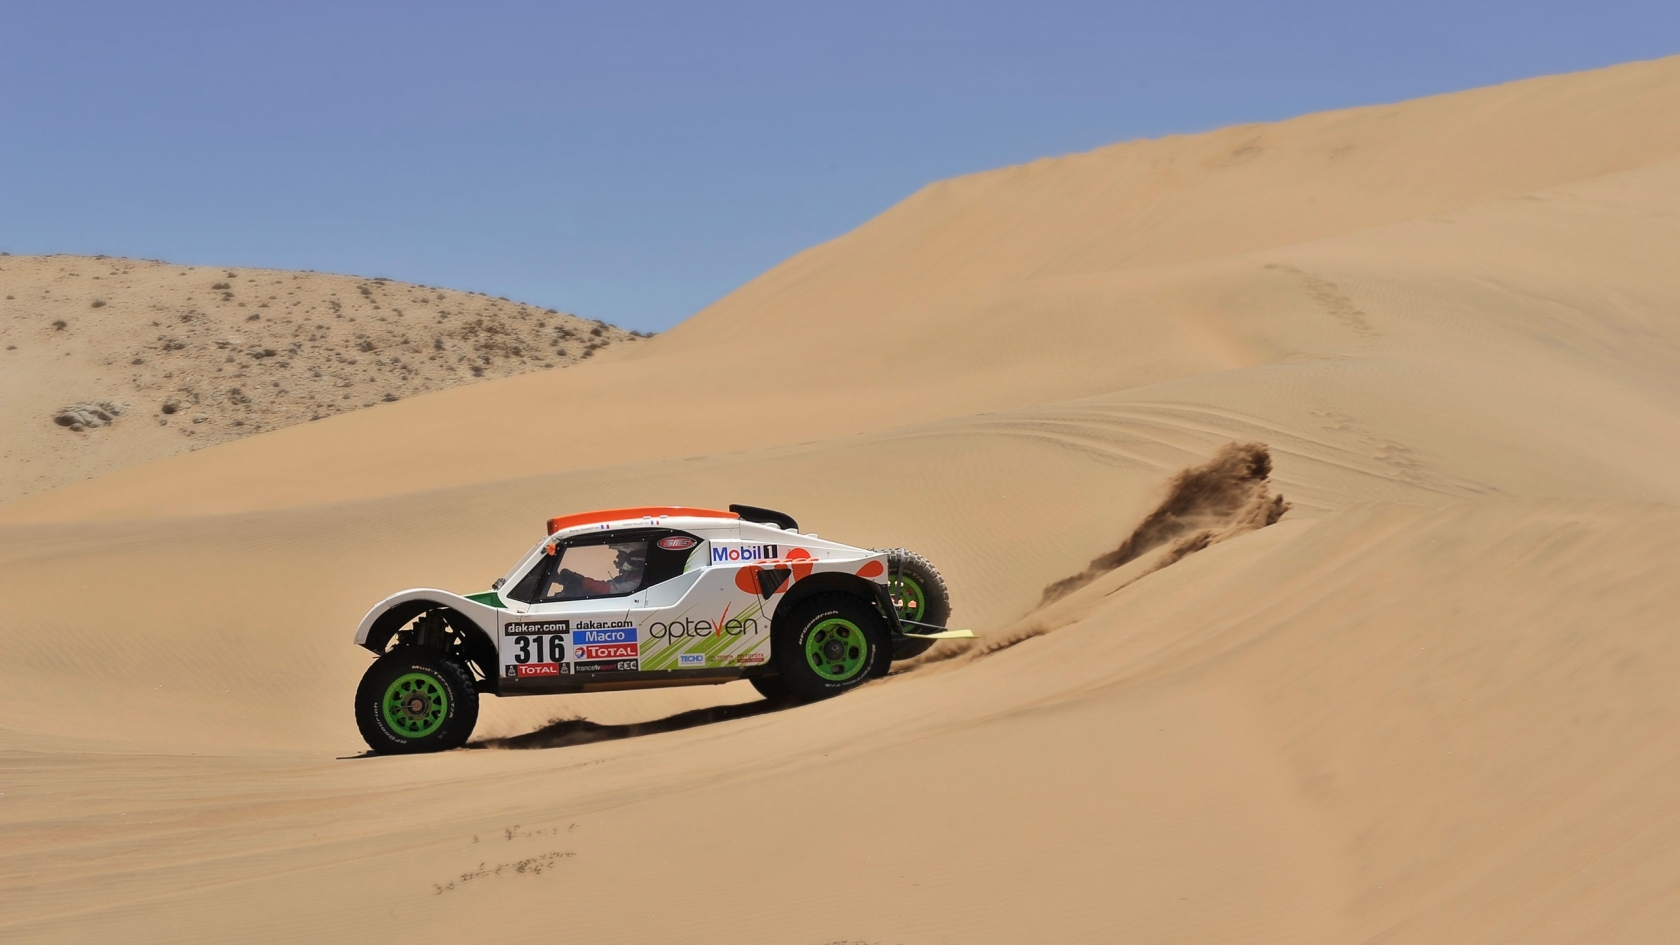 Rally Desert Race for 1680 x 945 HDTV resolution